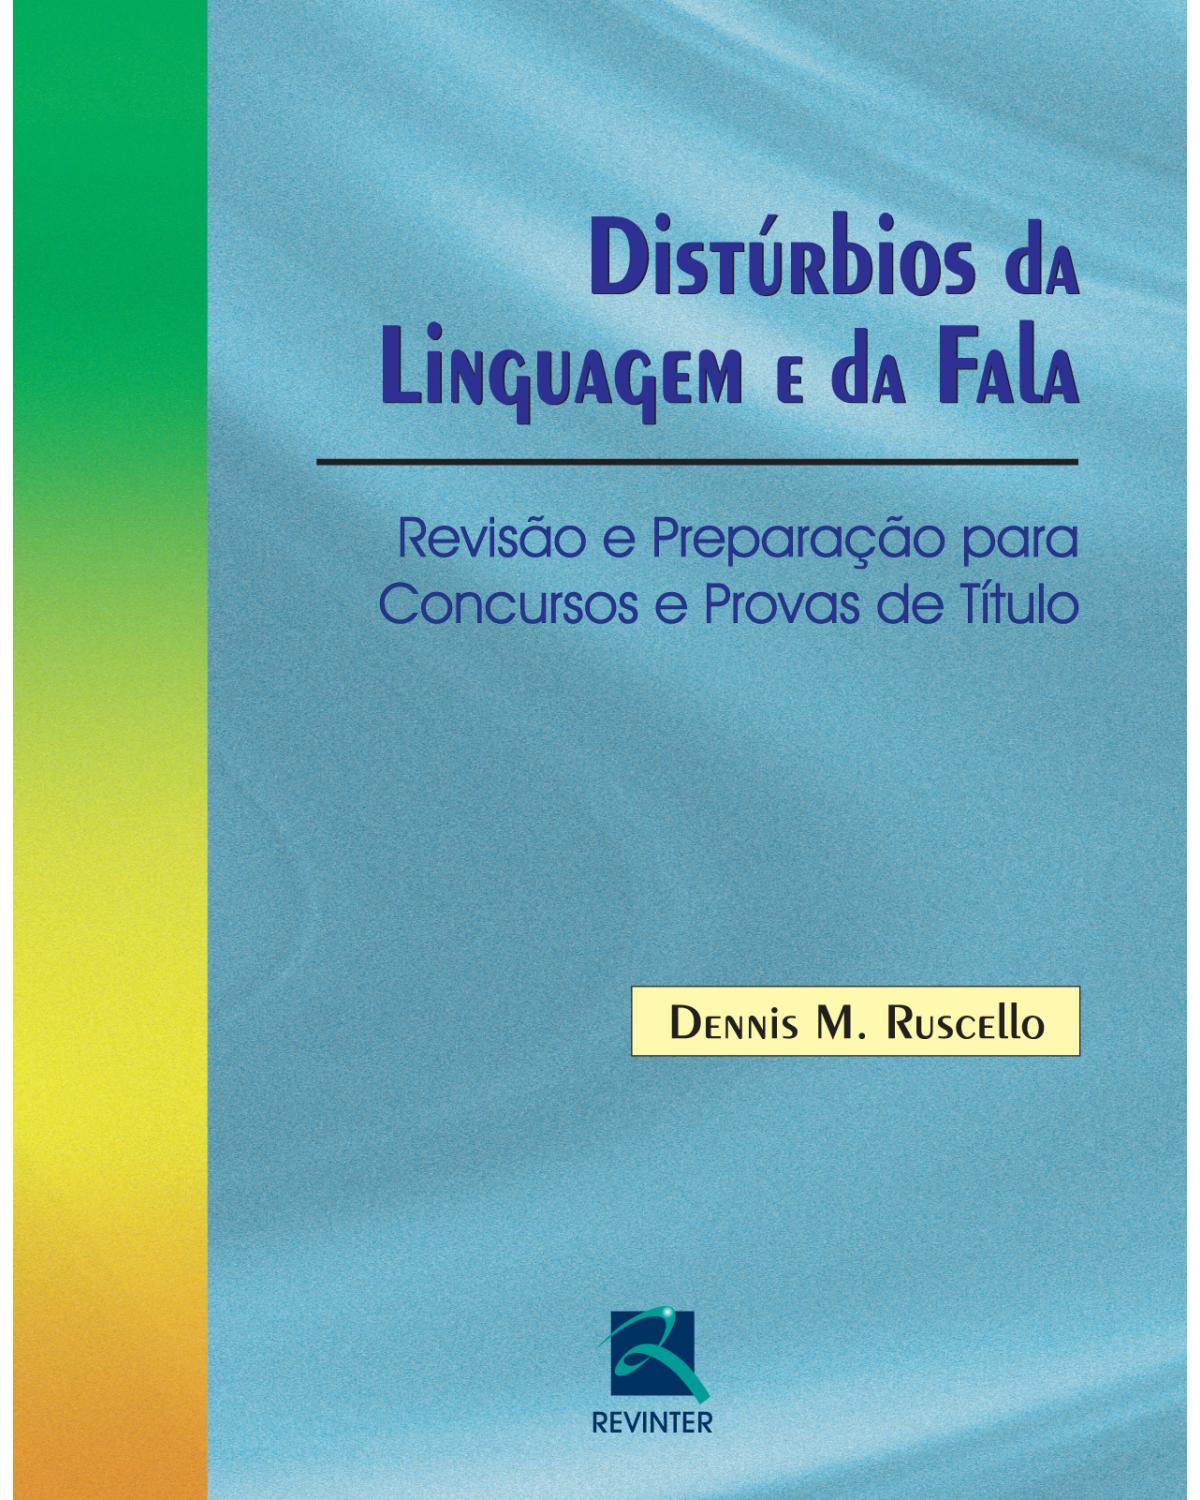 Distúrbios da linguagem e da fala - revisão e preparação para concursos e provas de título - 1ª Edição | 2013